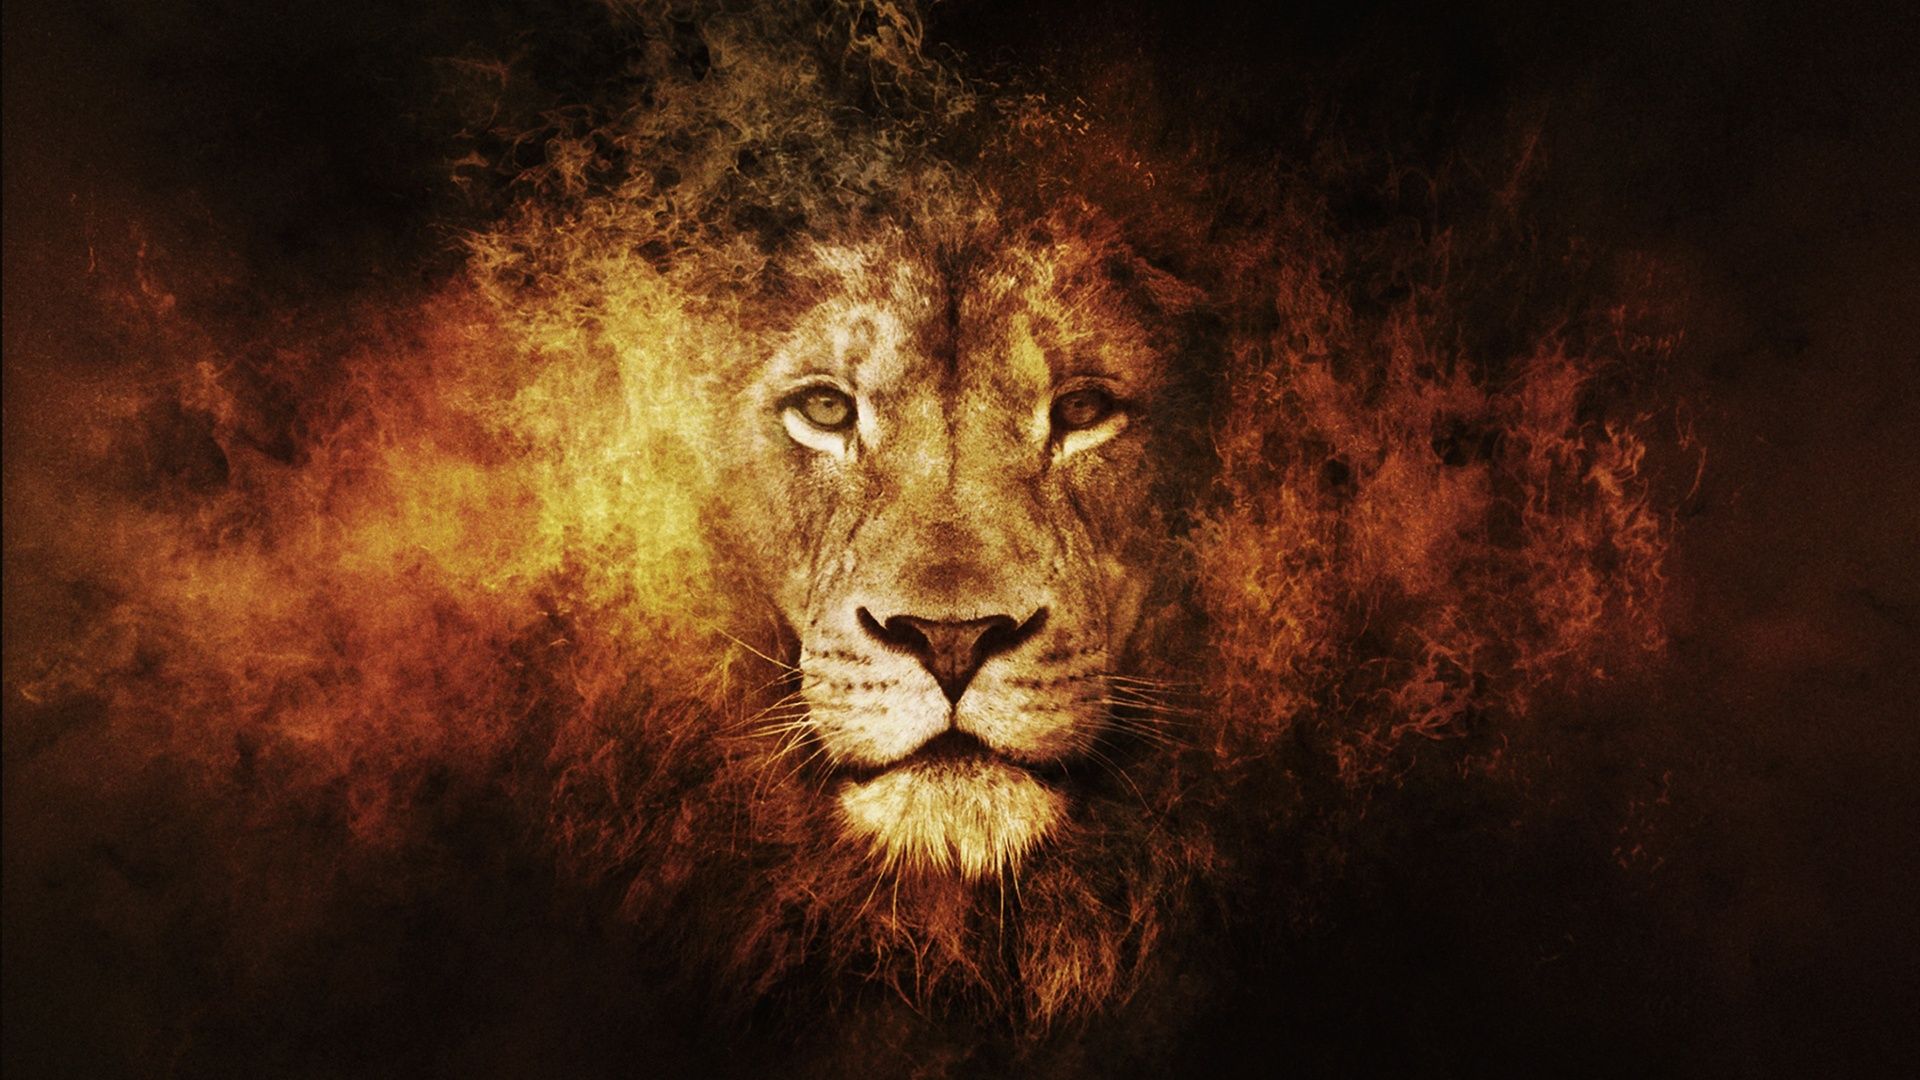 desktop lion HD wallpaper 1080p. Lion HD wallpaper, Lion artwork